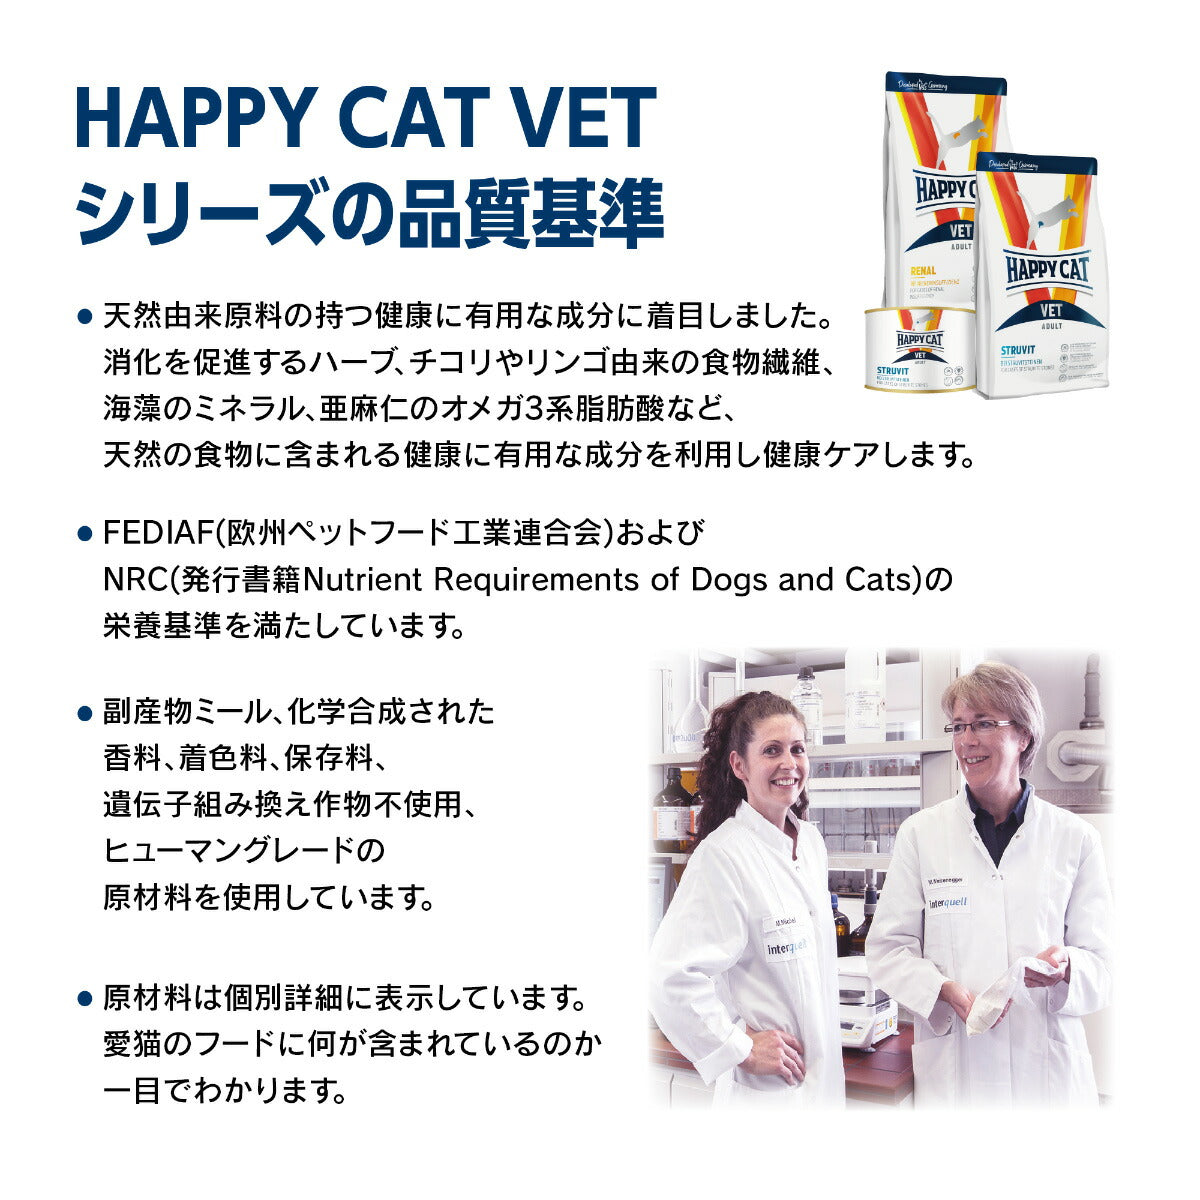 ハッピーキャット HAPPY CAT VET キャットフード 猫用療法食 リーナル（腎臓ケア） 300g